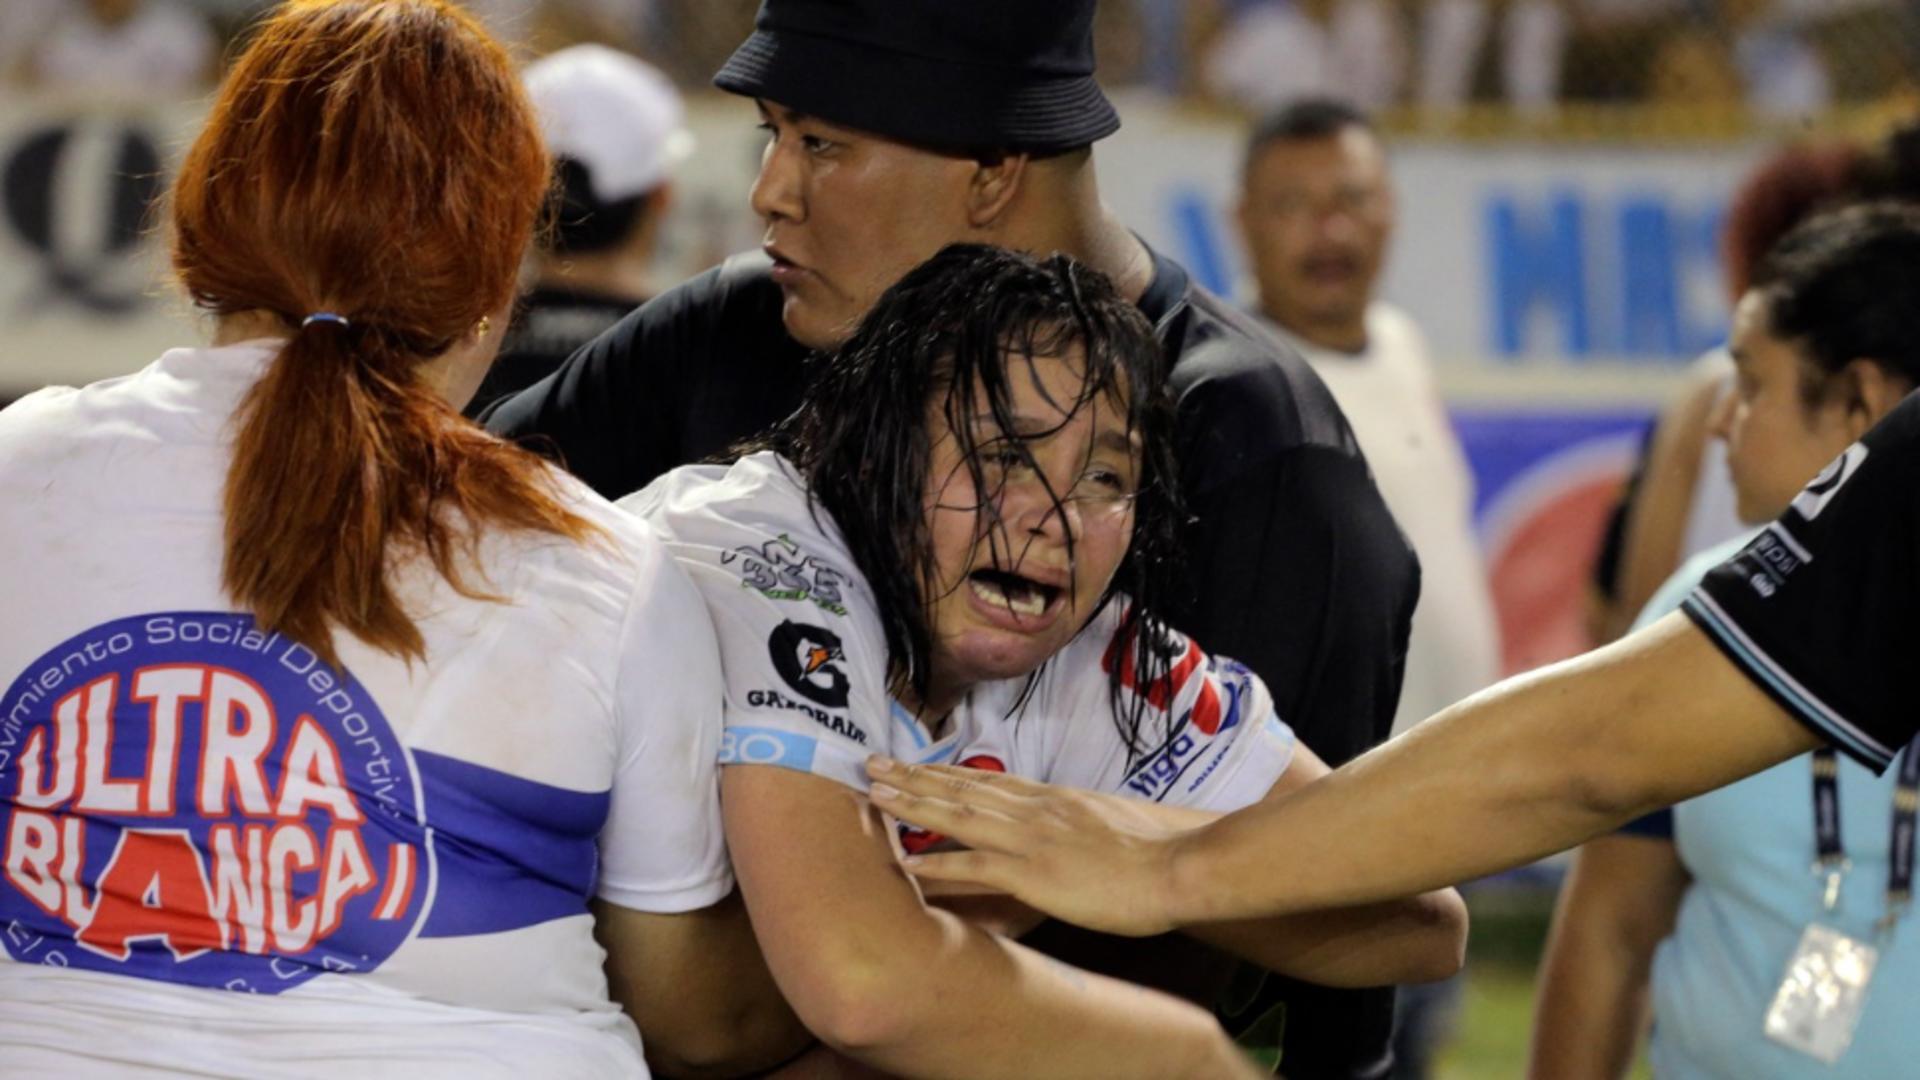 Tragedie uriașă pe stadion: Peste 100 de morți și răniți într-o busculadă pentru a intra la meci Foto: Profi Media